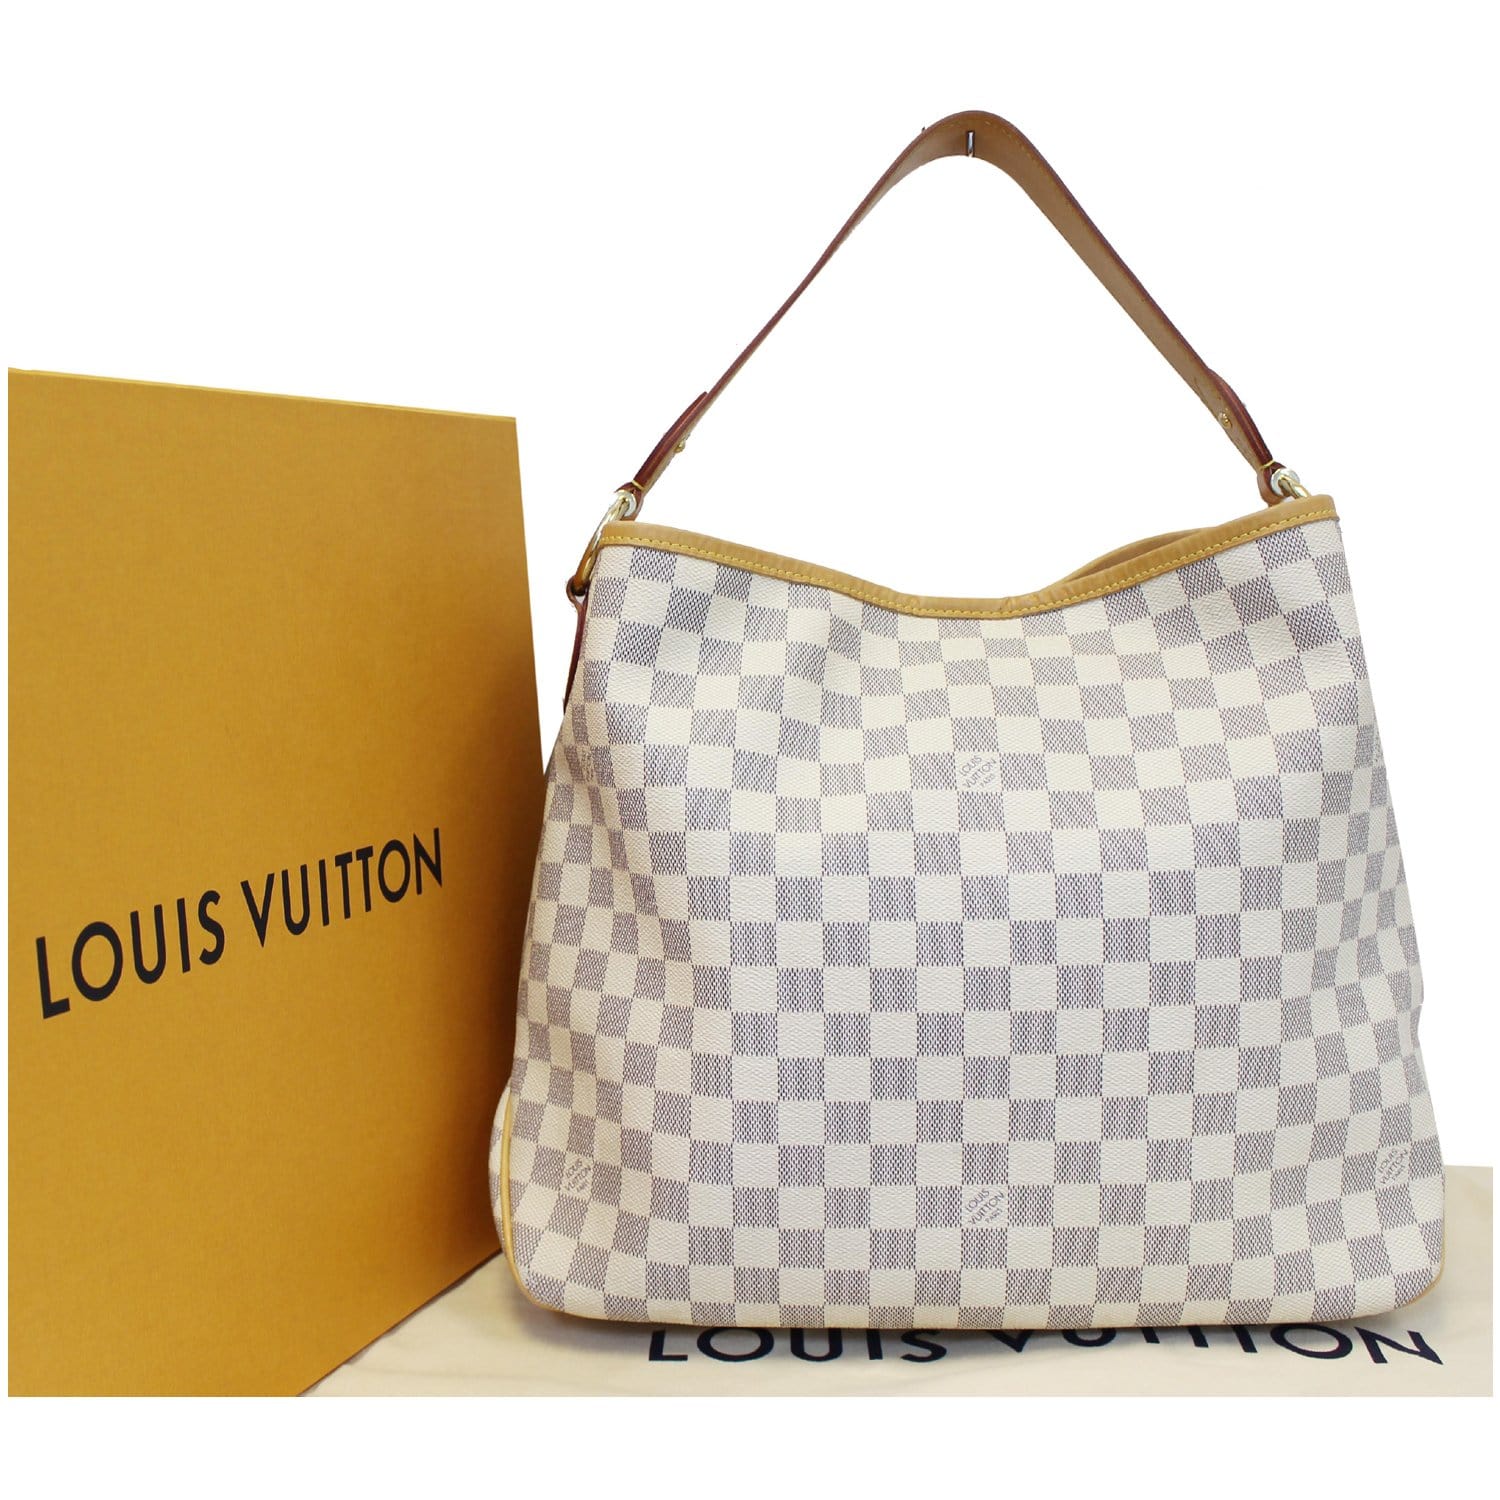 Louis Vuitton Delightful MM Damier Azur Review 